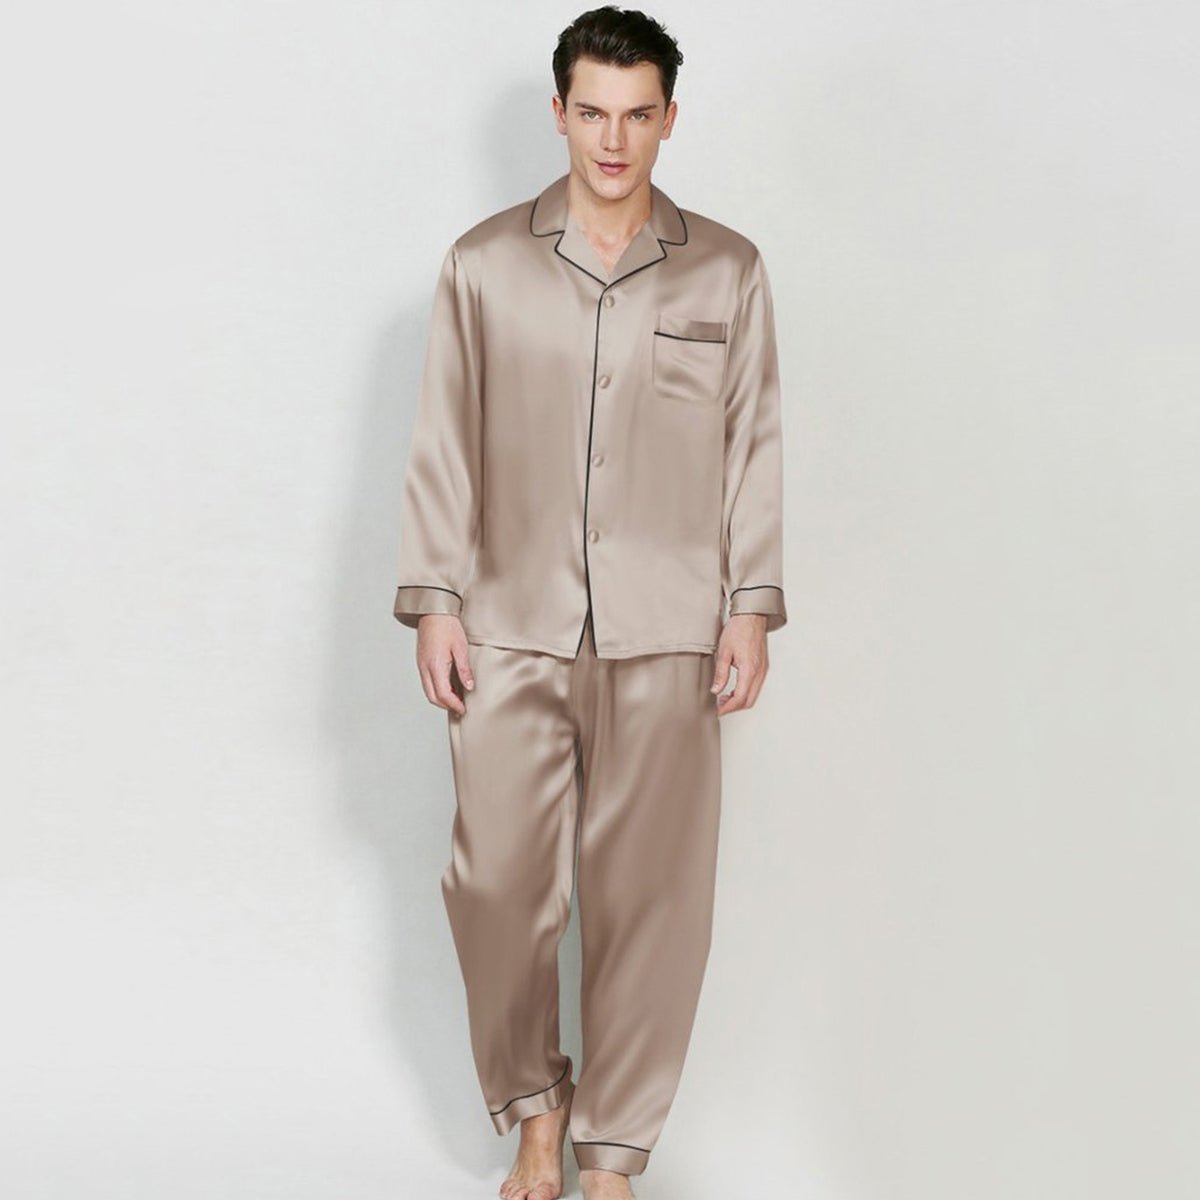 Mens Silk Satin Pajamas Pj Set Top and Bottom Sleepwear Nightwear Casual  pijamas 